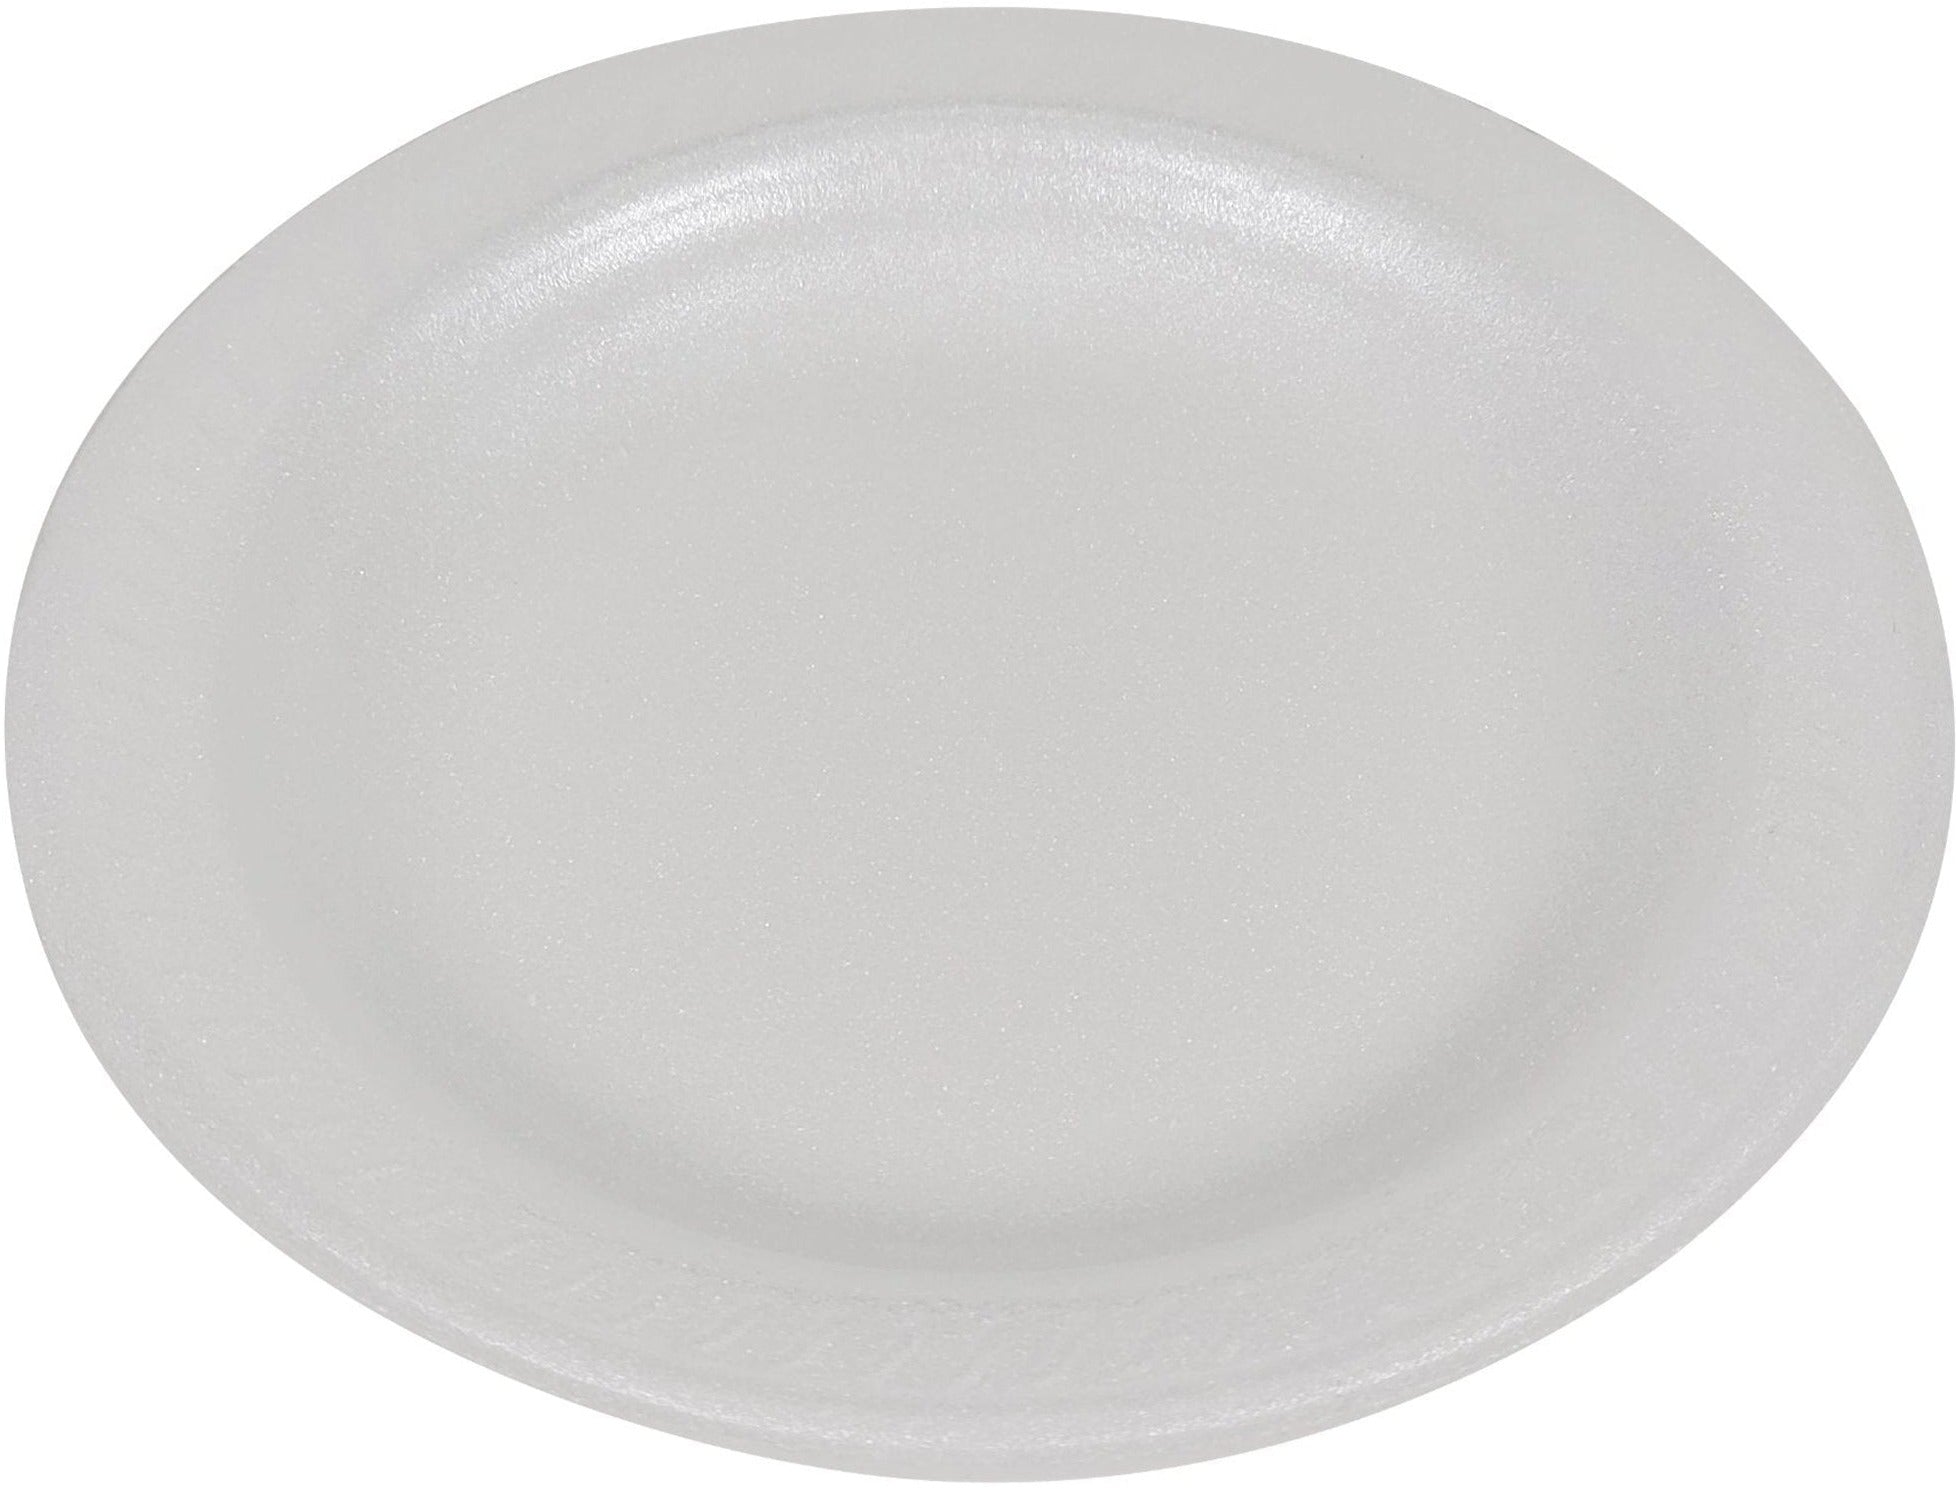 Bulk Foam Plates: Shop WebstaurantStore